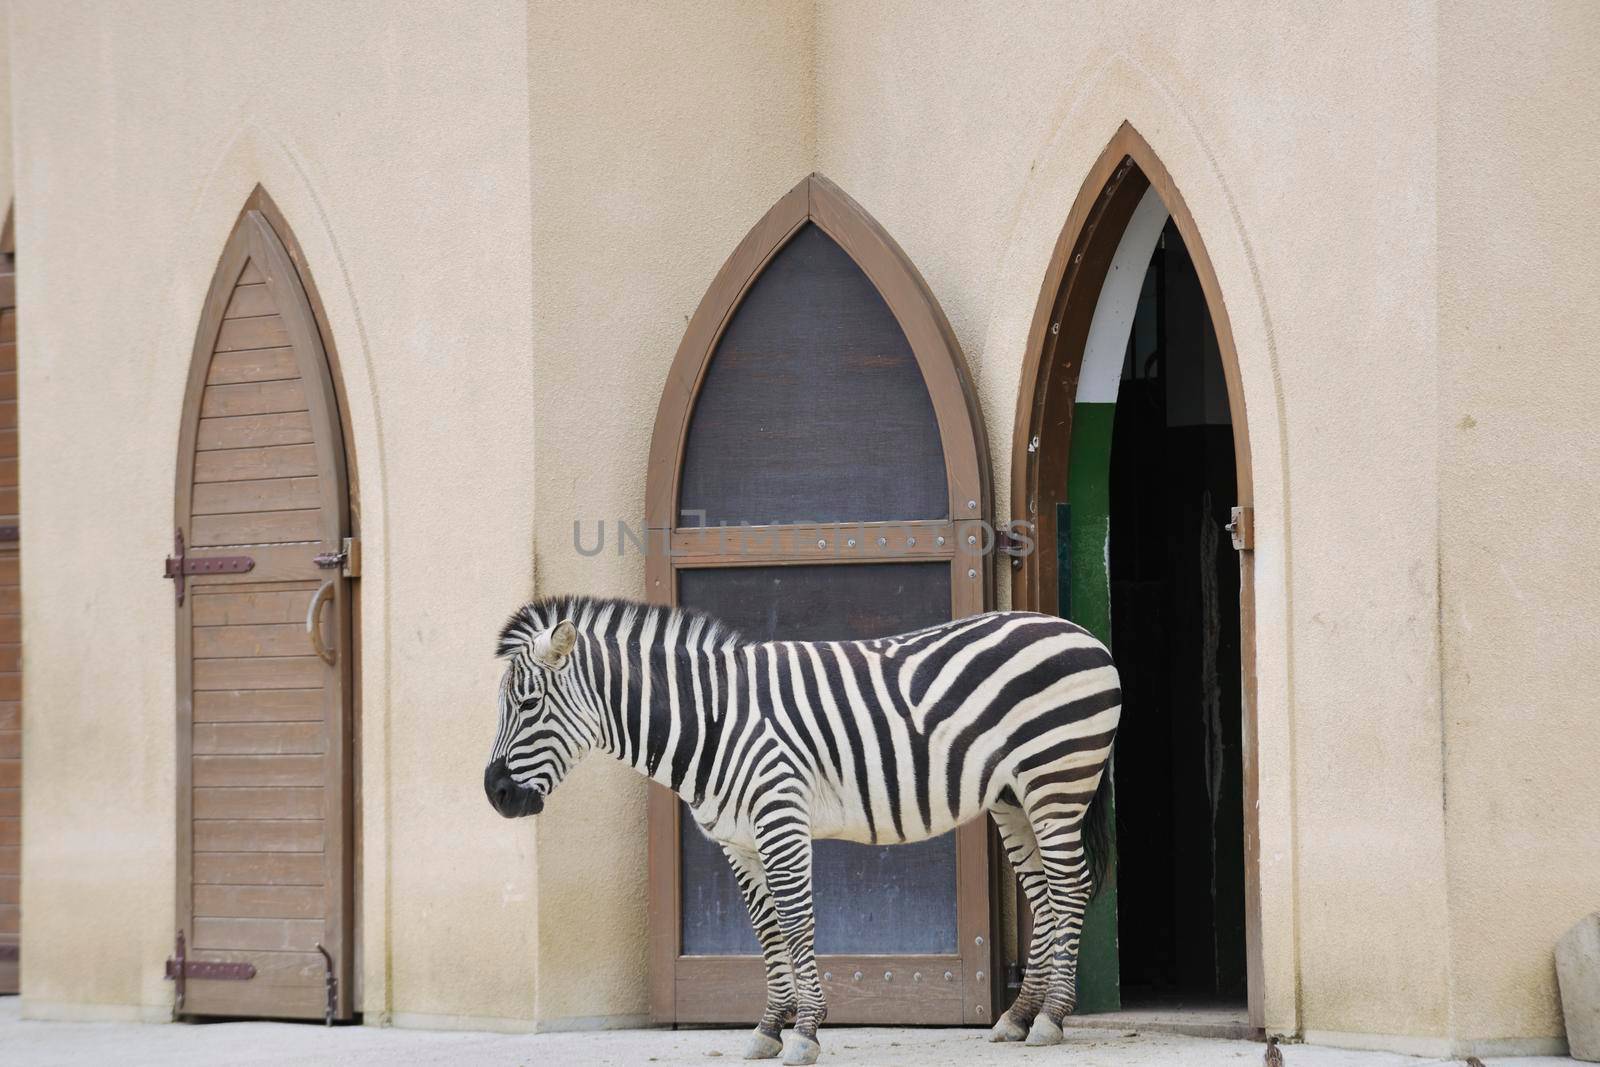 zebra wild animal  in zoo 